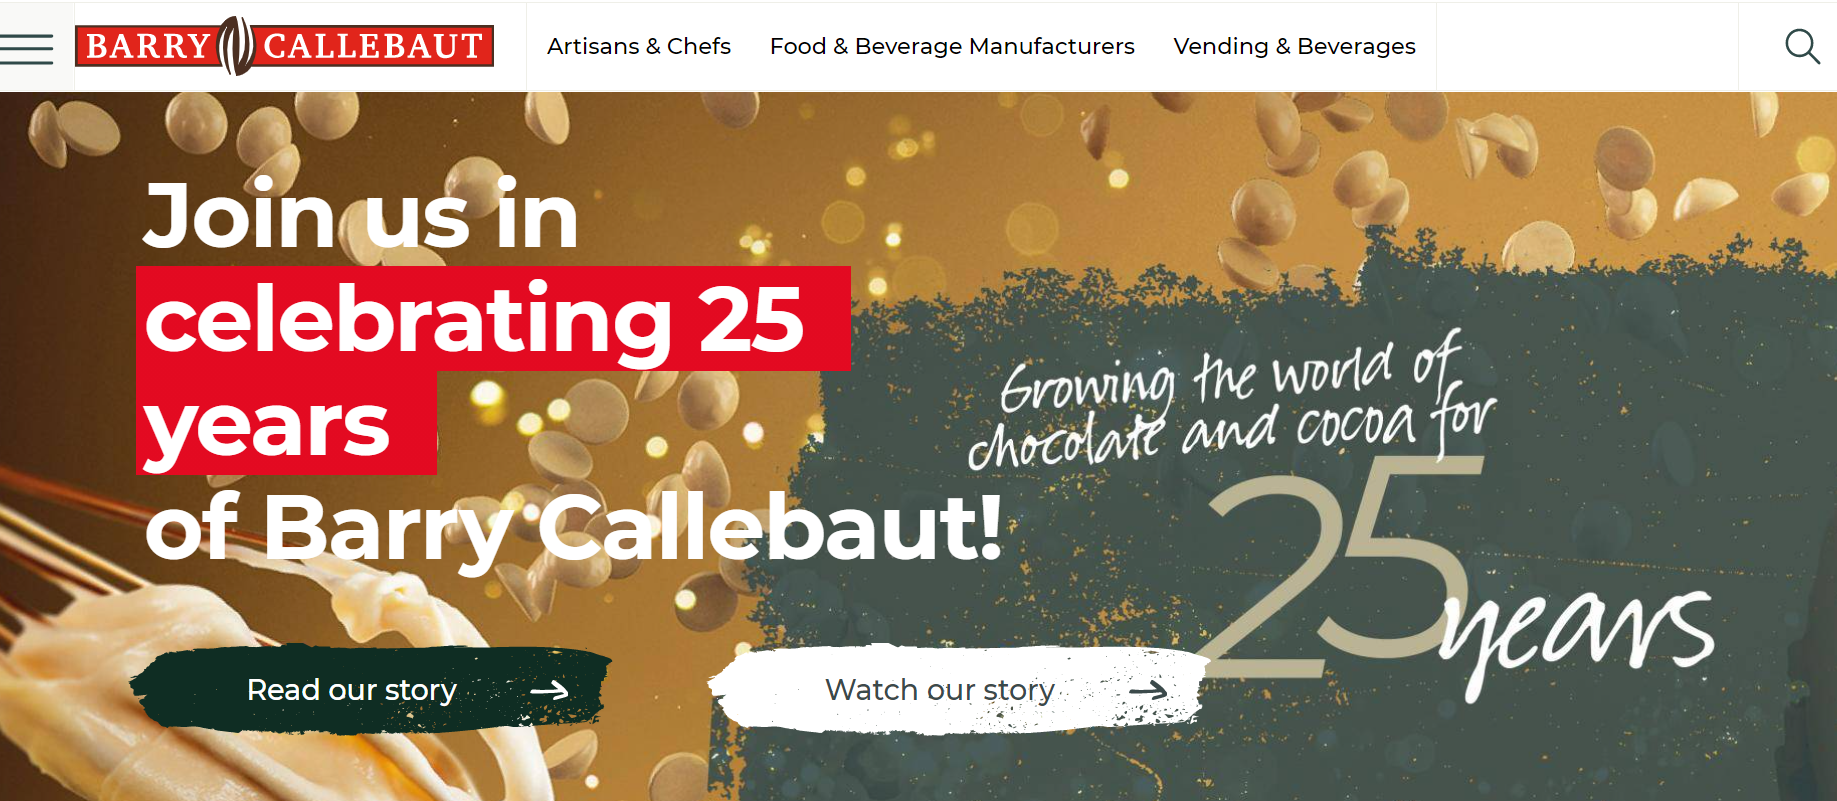 瑞士巧克力生产巨头 Barry Callebaut 最新财报超出疫情前水平